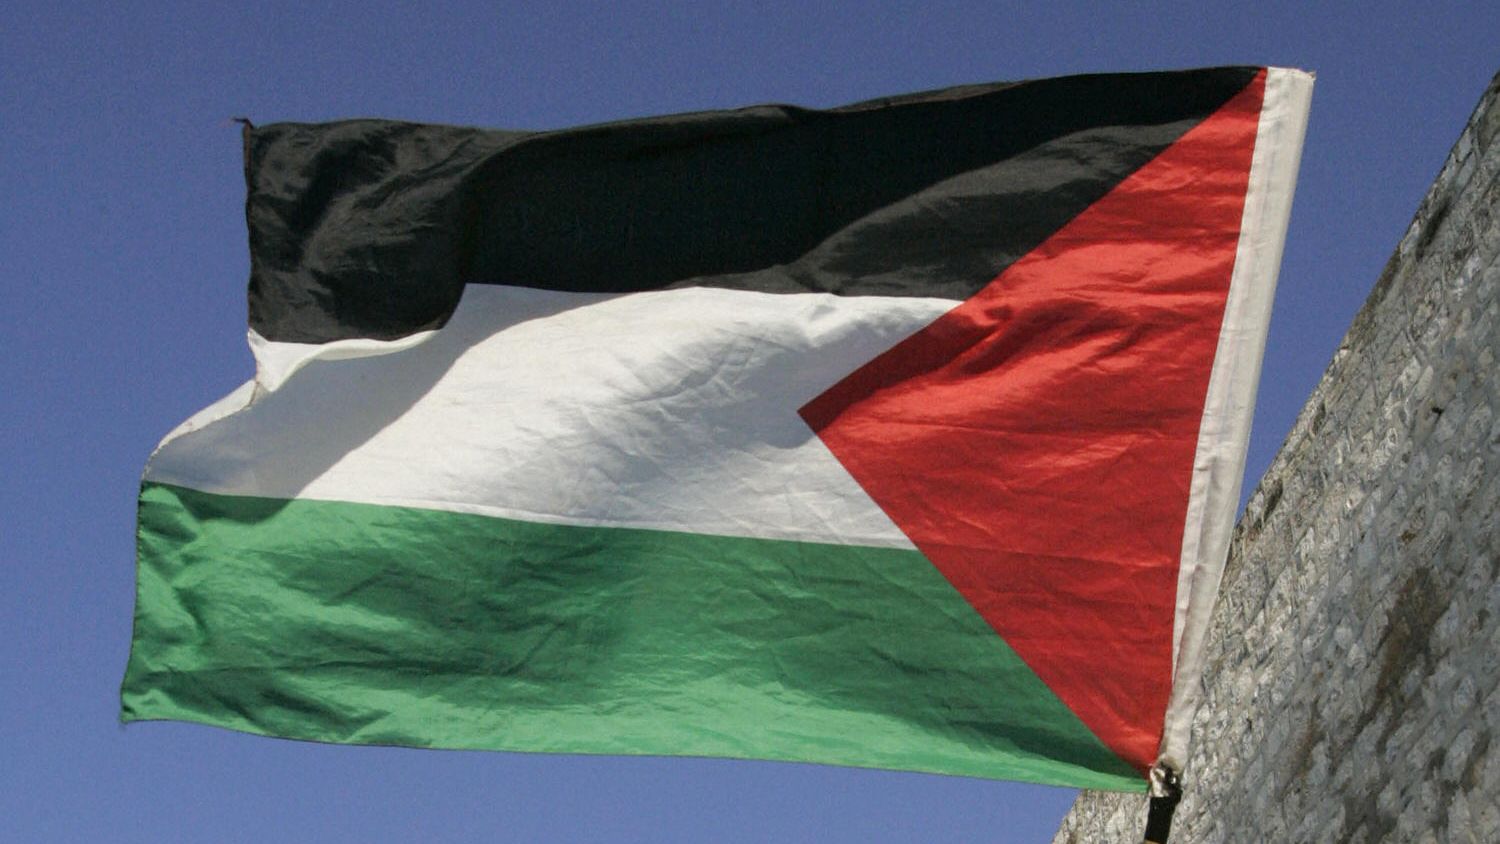 Historic raising of Palestinian flag at United Nations